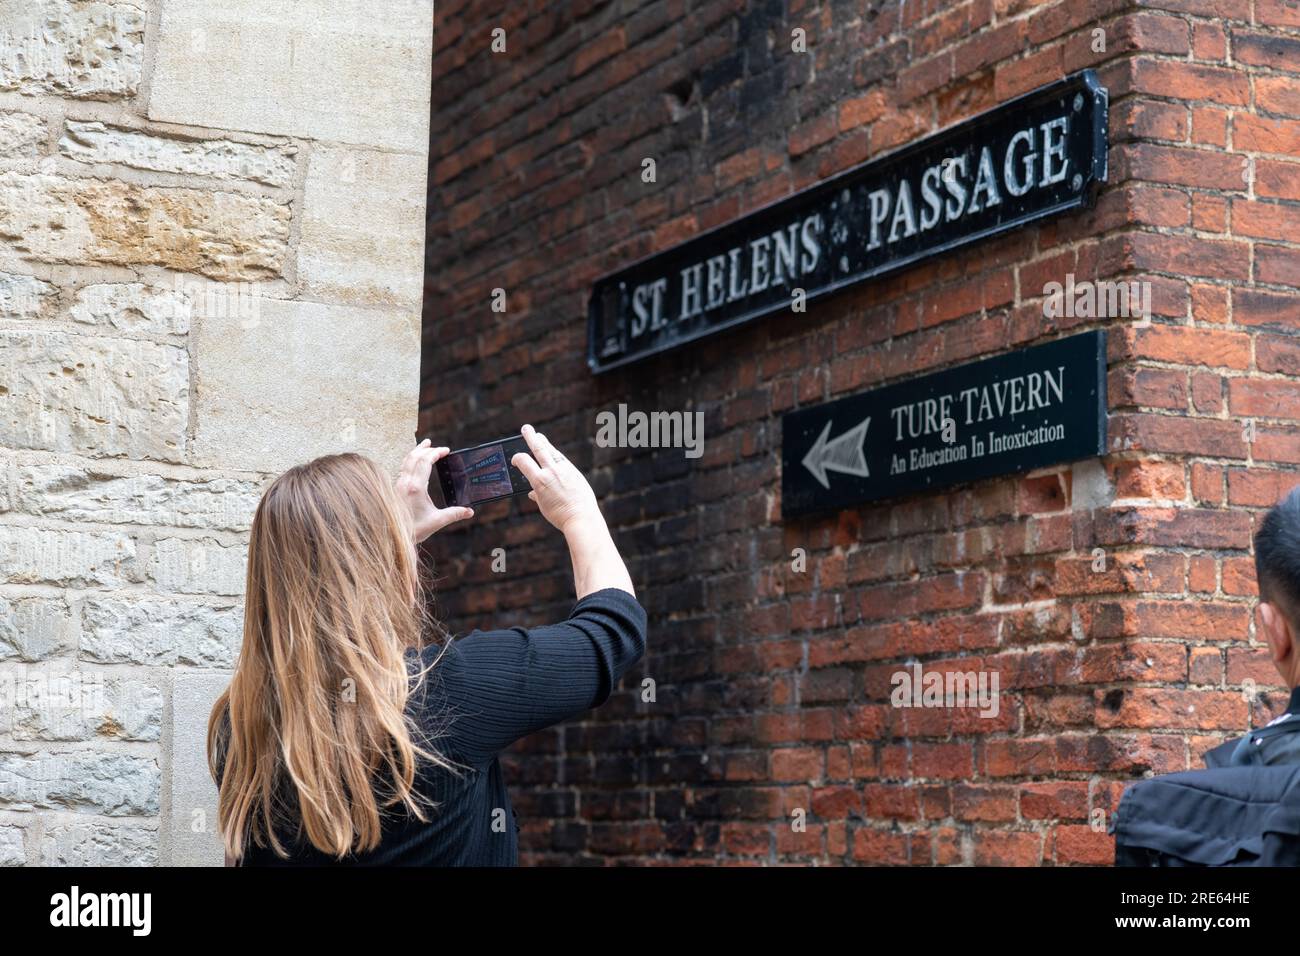 Touriste féminine prenant la photo de St Helen passage, Oxford, menant à Turf Tavern. Banque D'Images